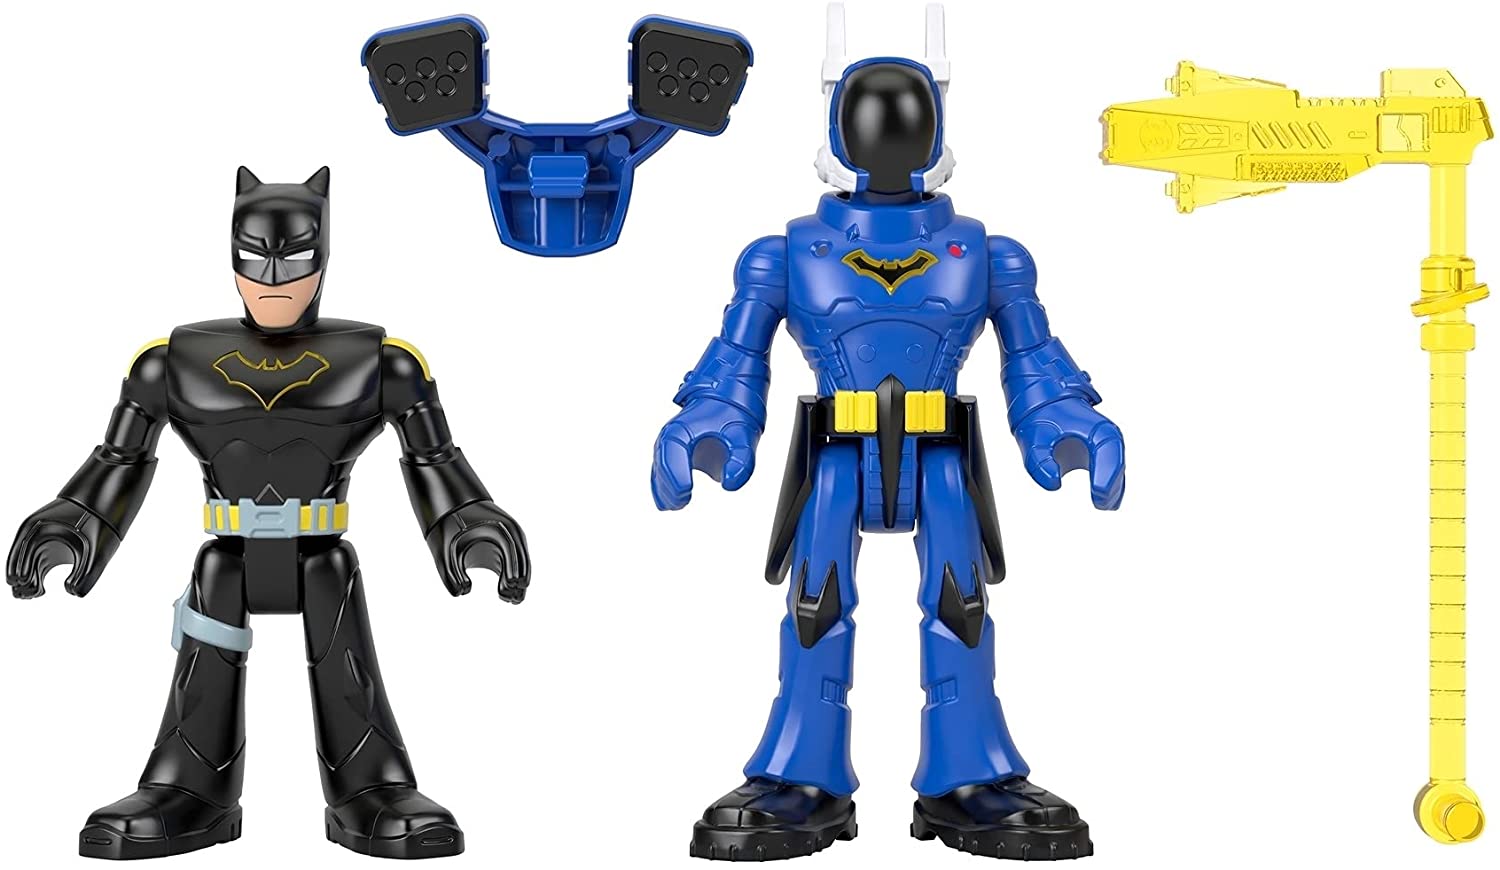 Imaginext DC Super Friends Batman & Rookie Figures